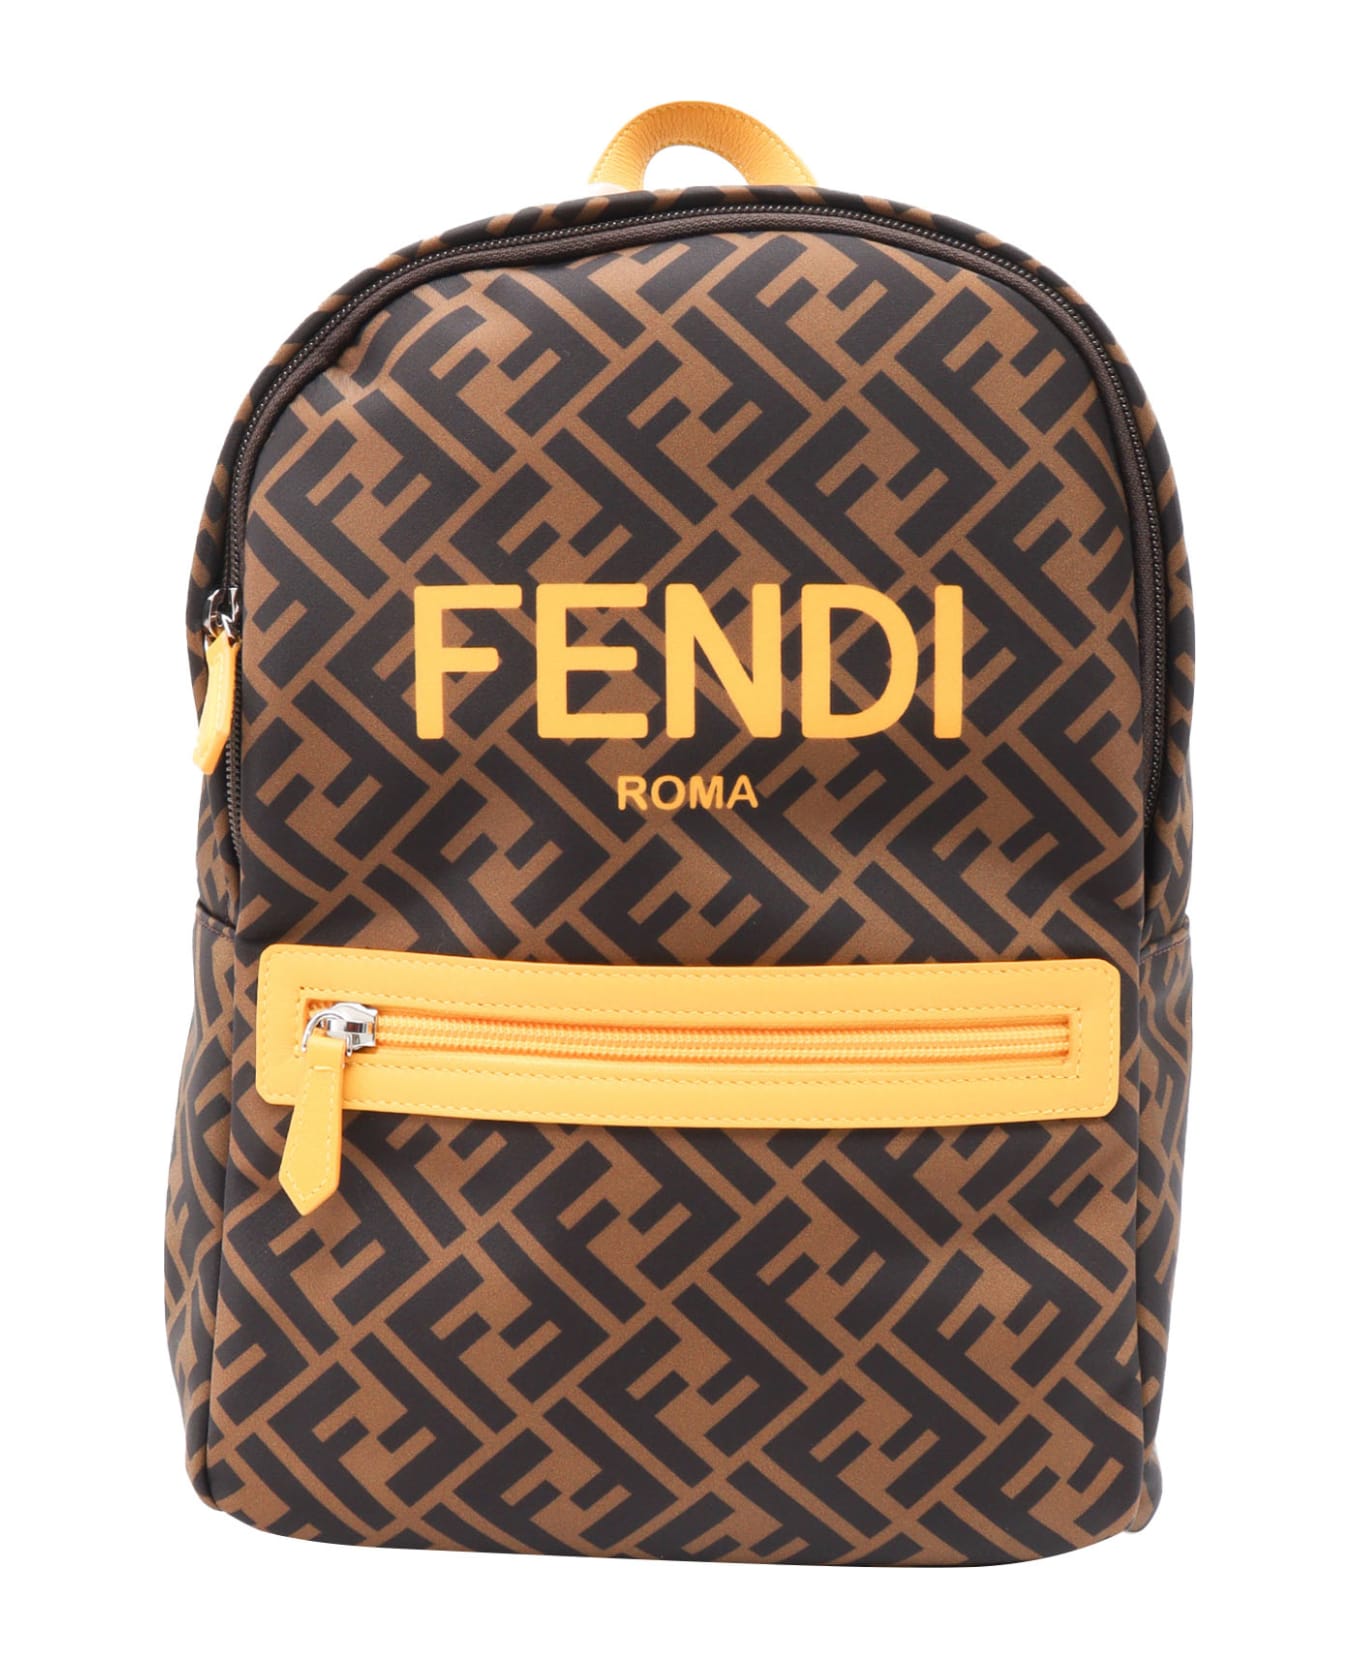 Fendi Ff Baby Backpack - BROWN